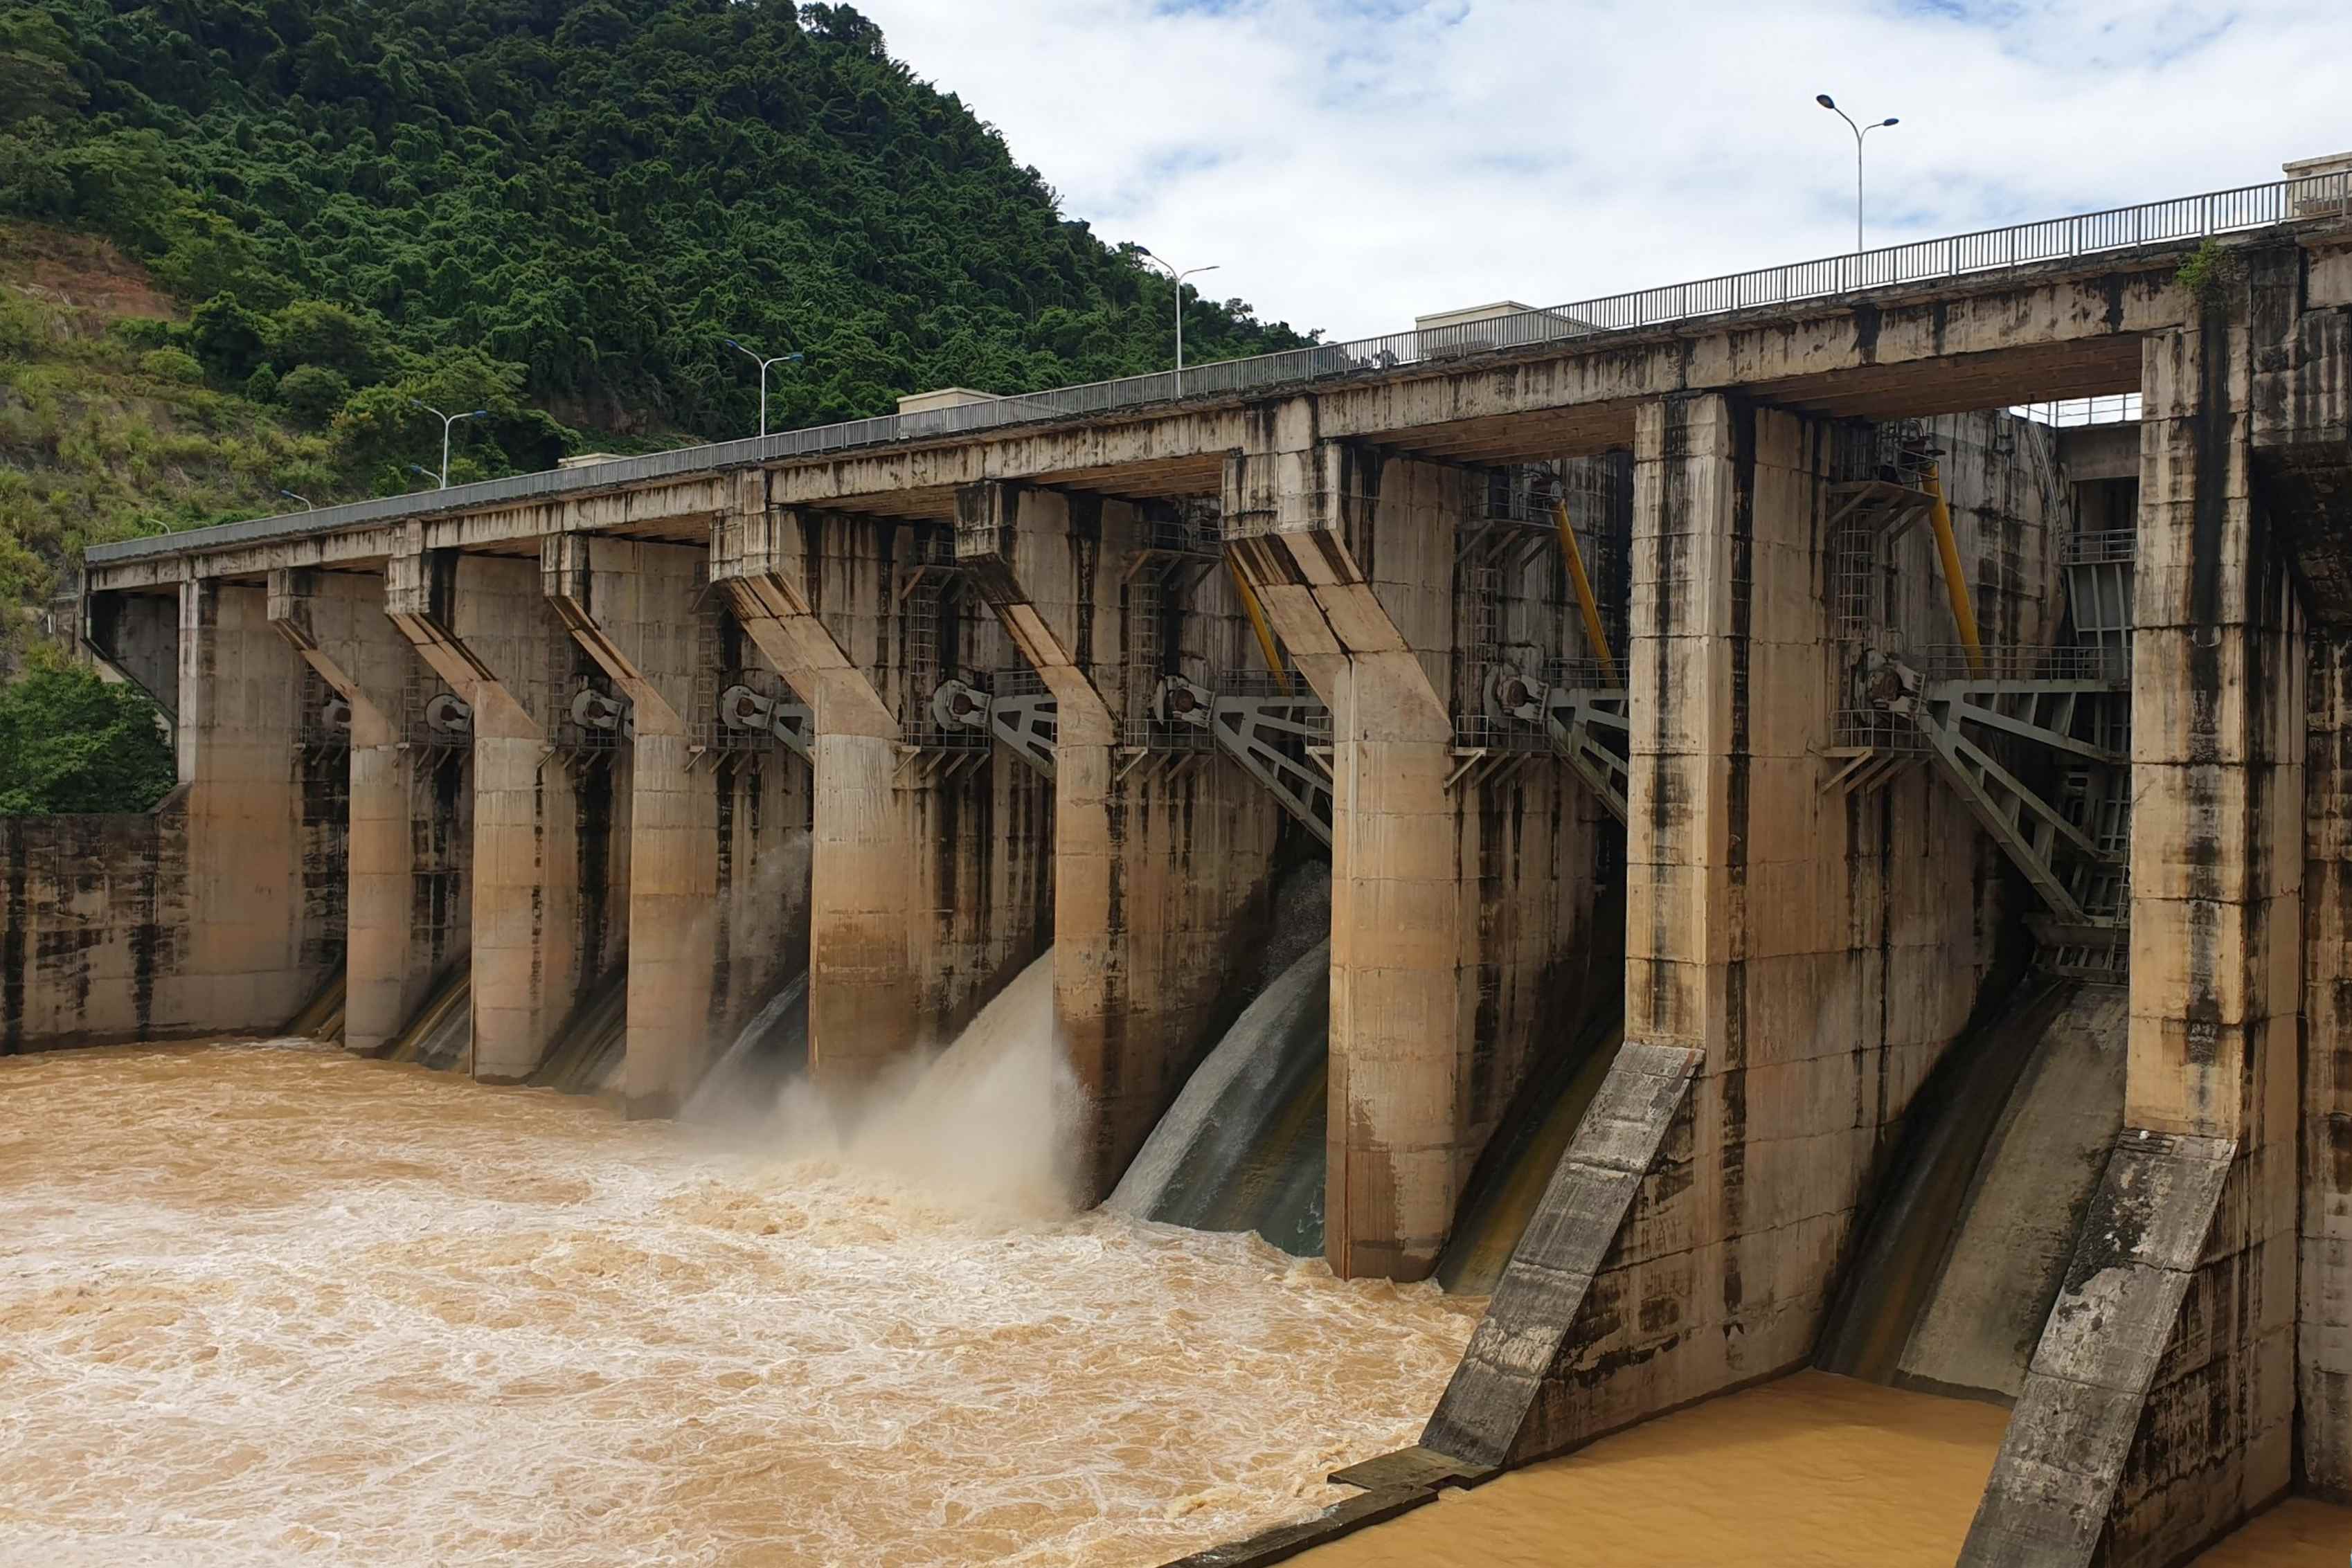 Nhiều hồ thủy điện tại miền Trung đã phải xả tràn để điều tiết hồ chứa khi mưa lớn do ảnh hưởng của áp thấp nhiệt đới khiến mực nước hồ tăng nhanh